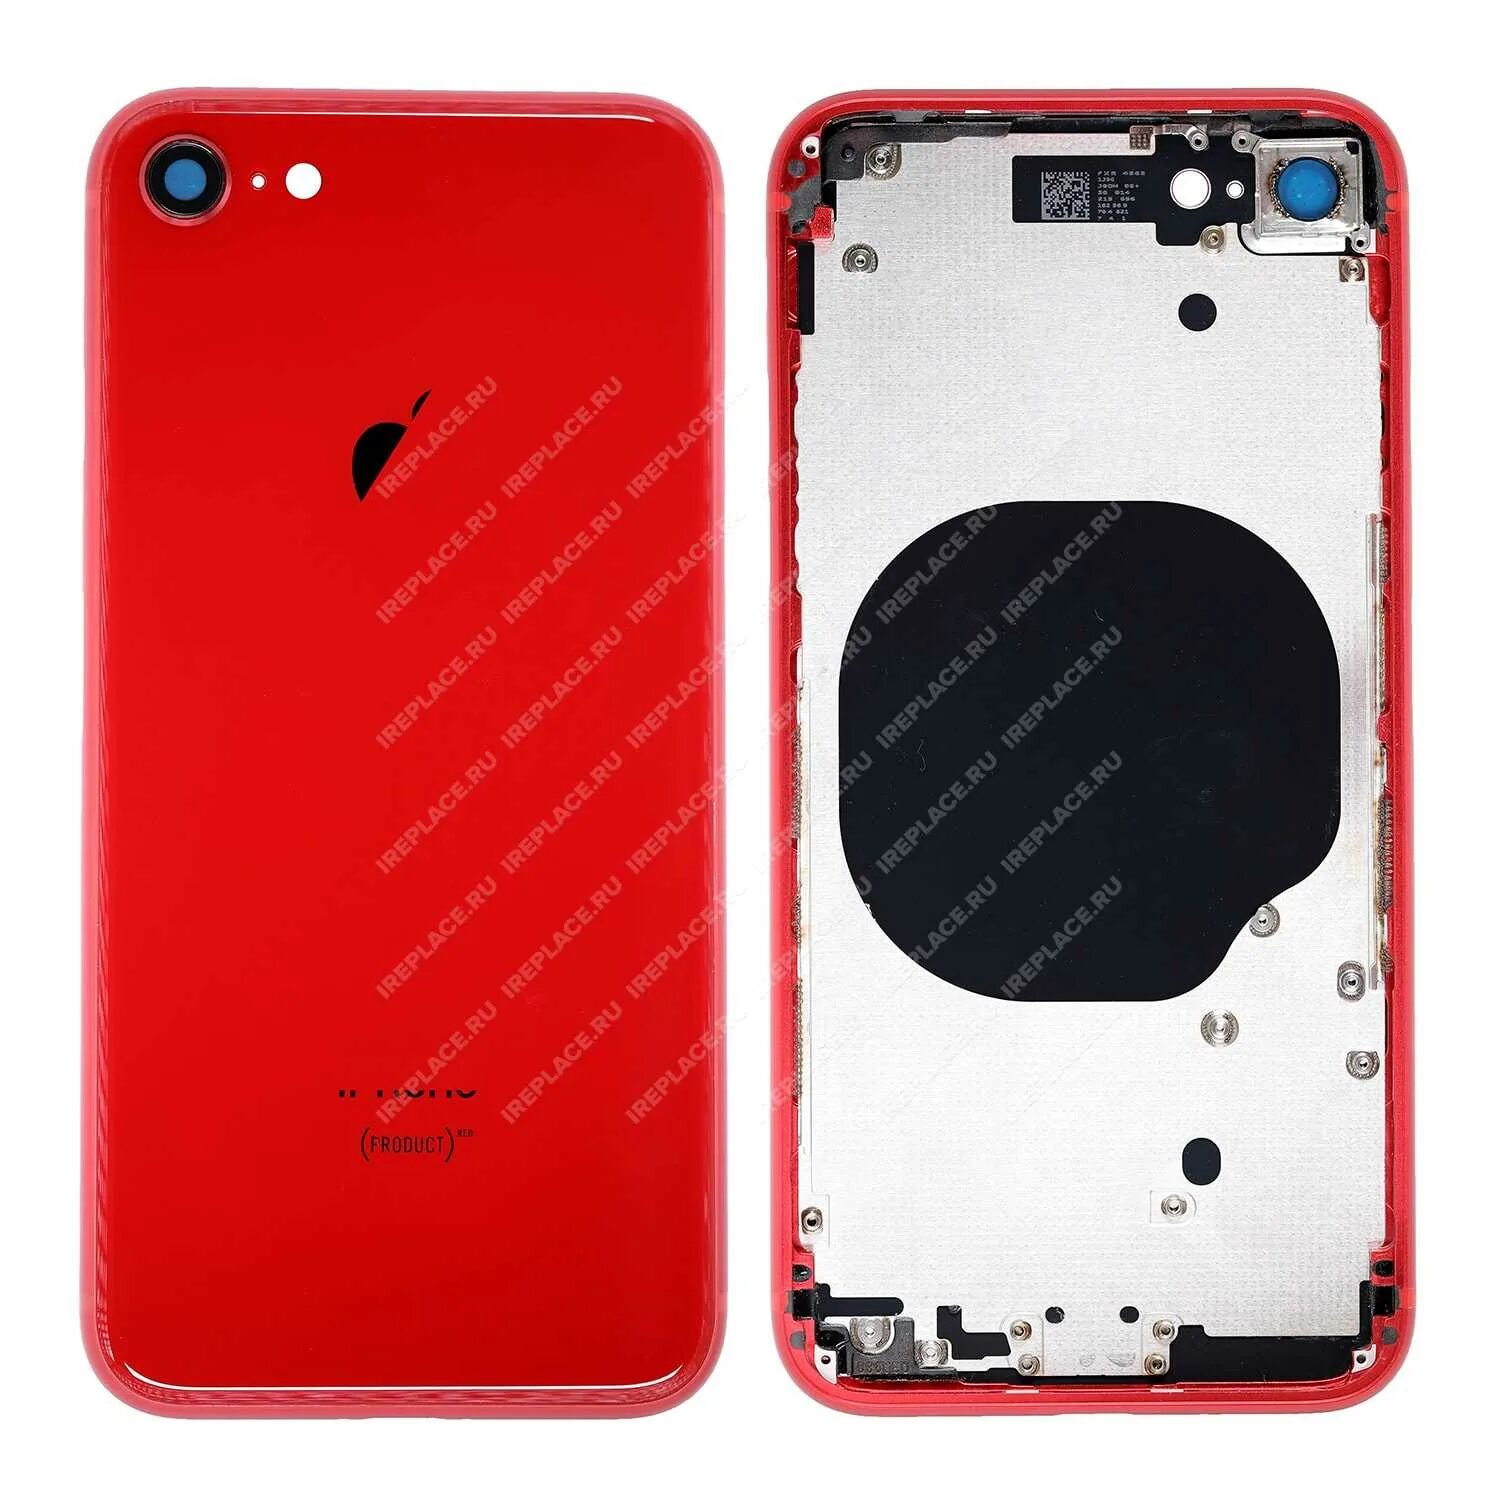 Корпус айфон 8. Корпус iphone se 2020. Корпус для iphone 8 Red. Корпус для Apple iphone 8 Red. Корпус iphone 8 (Red) (ce).